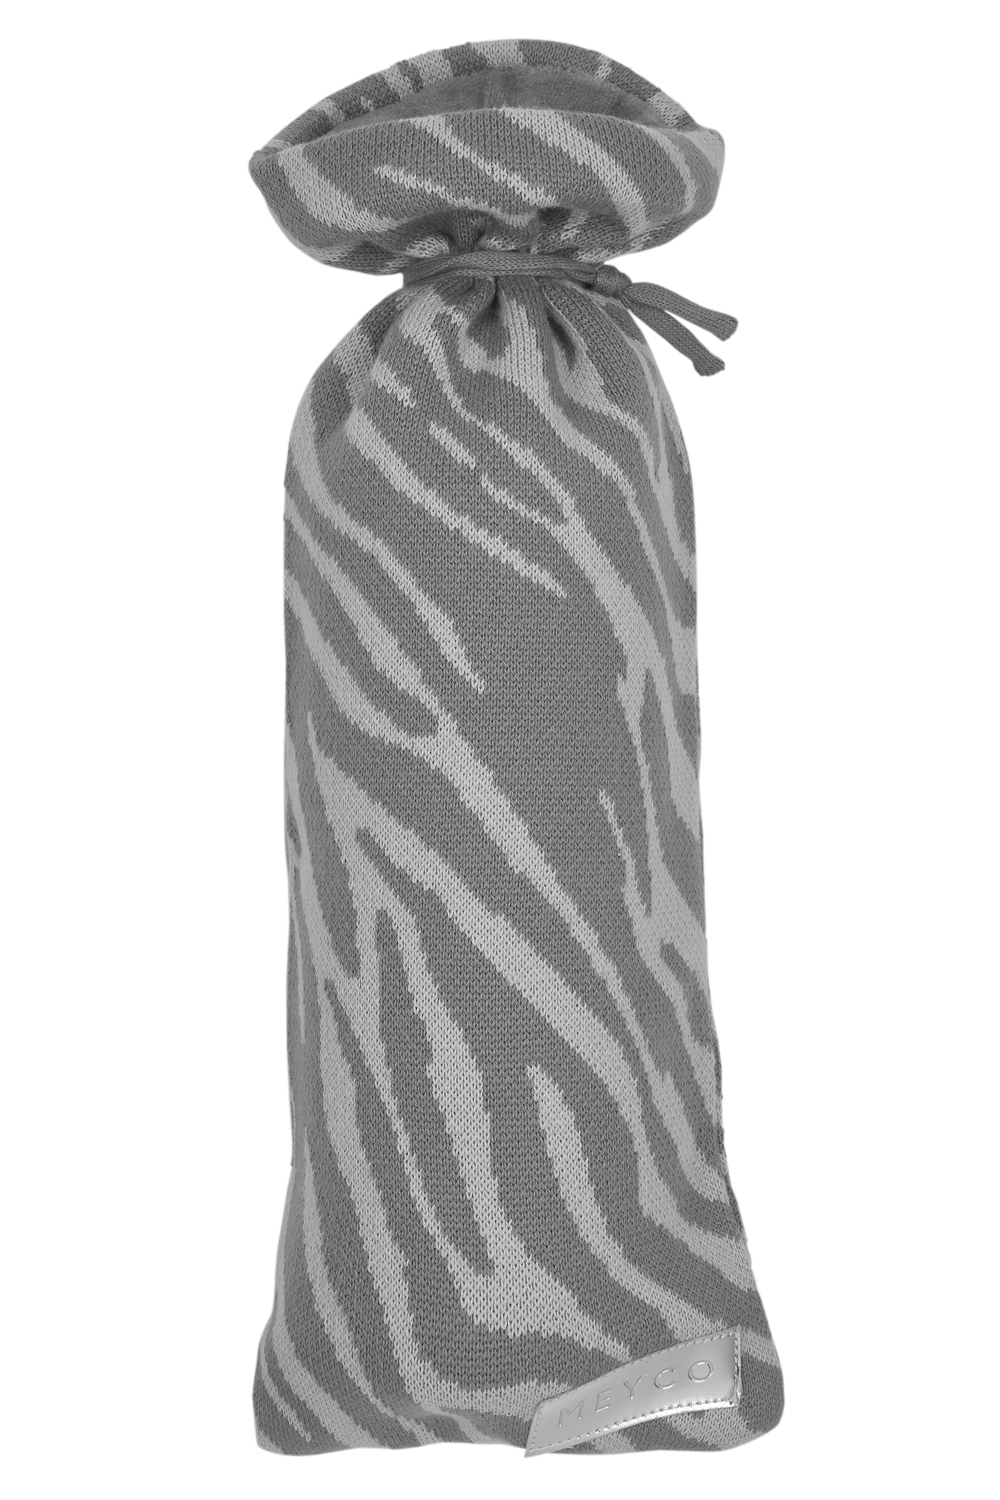 Kruikenzak Zebra - grey